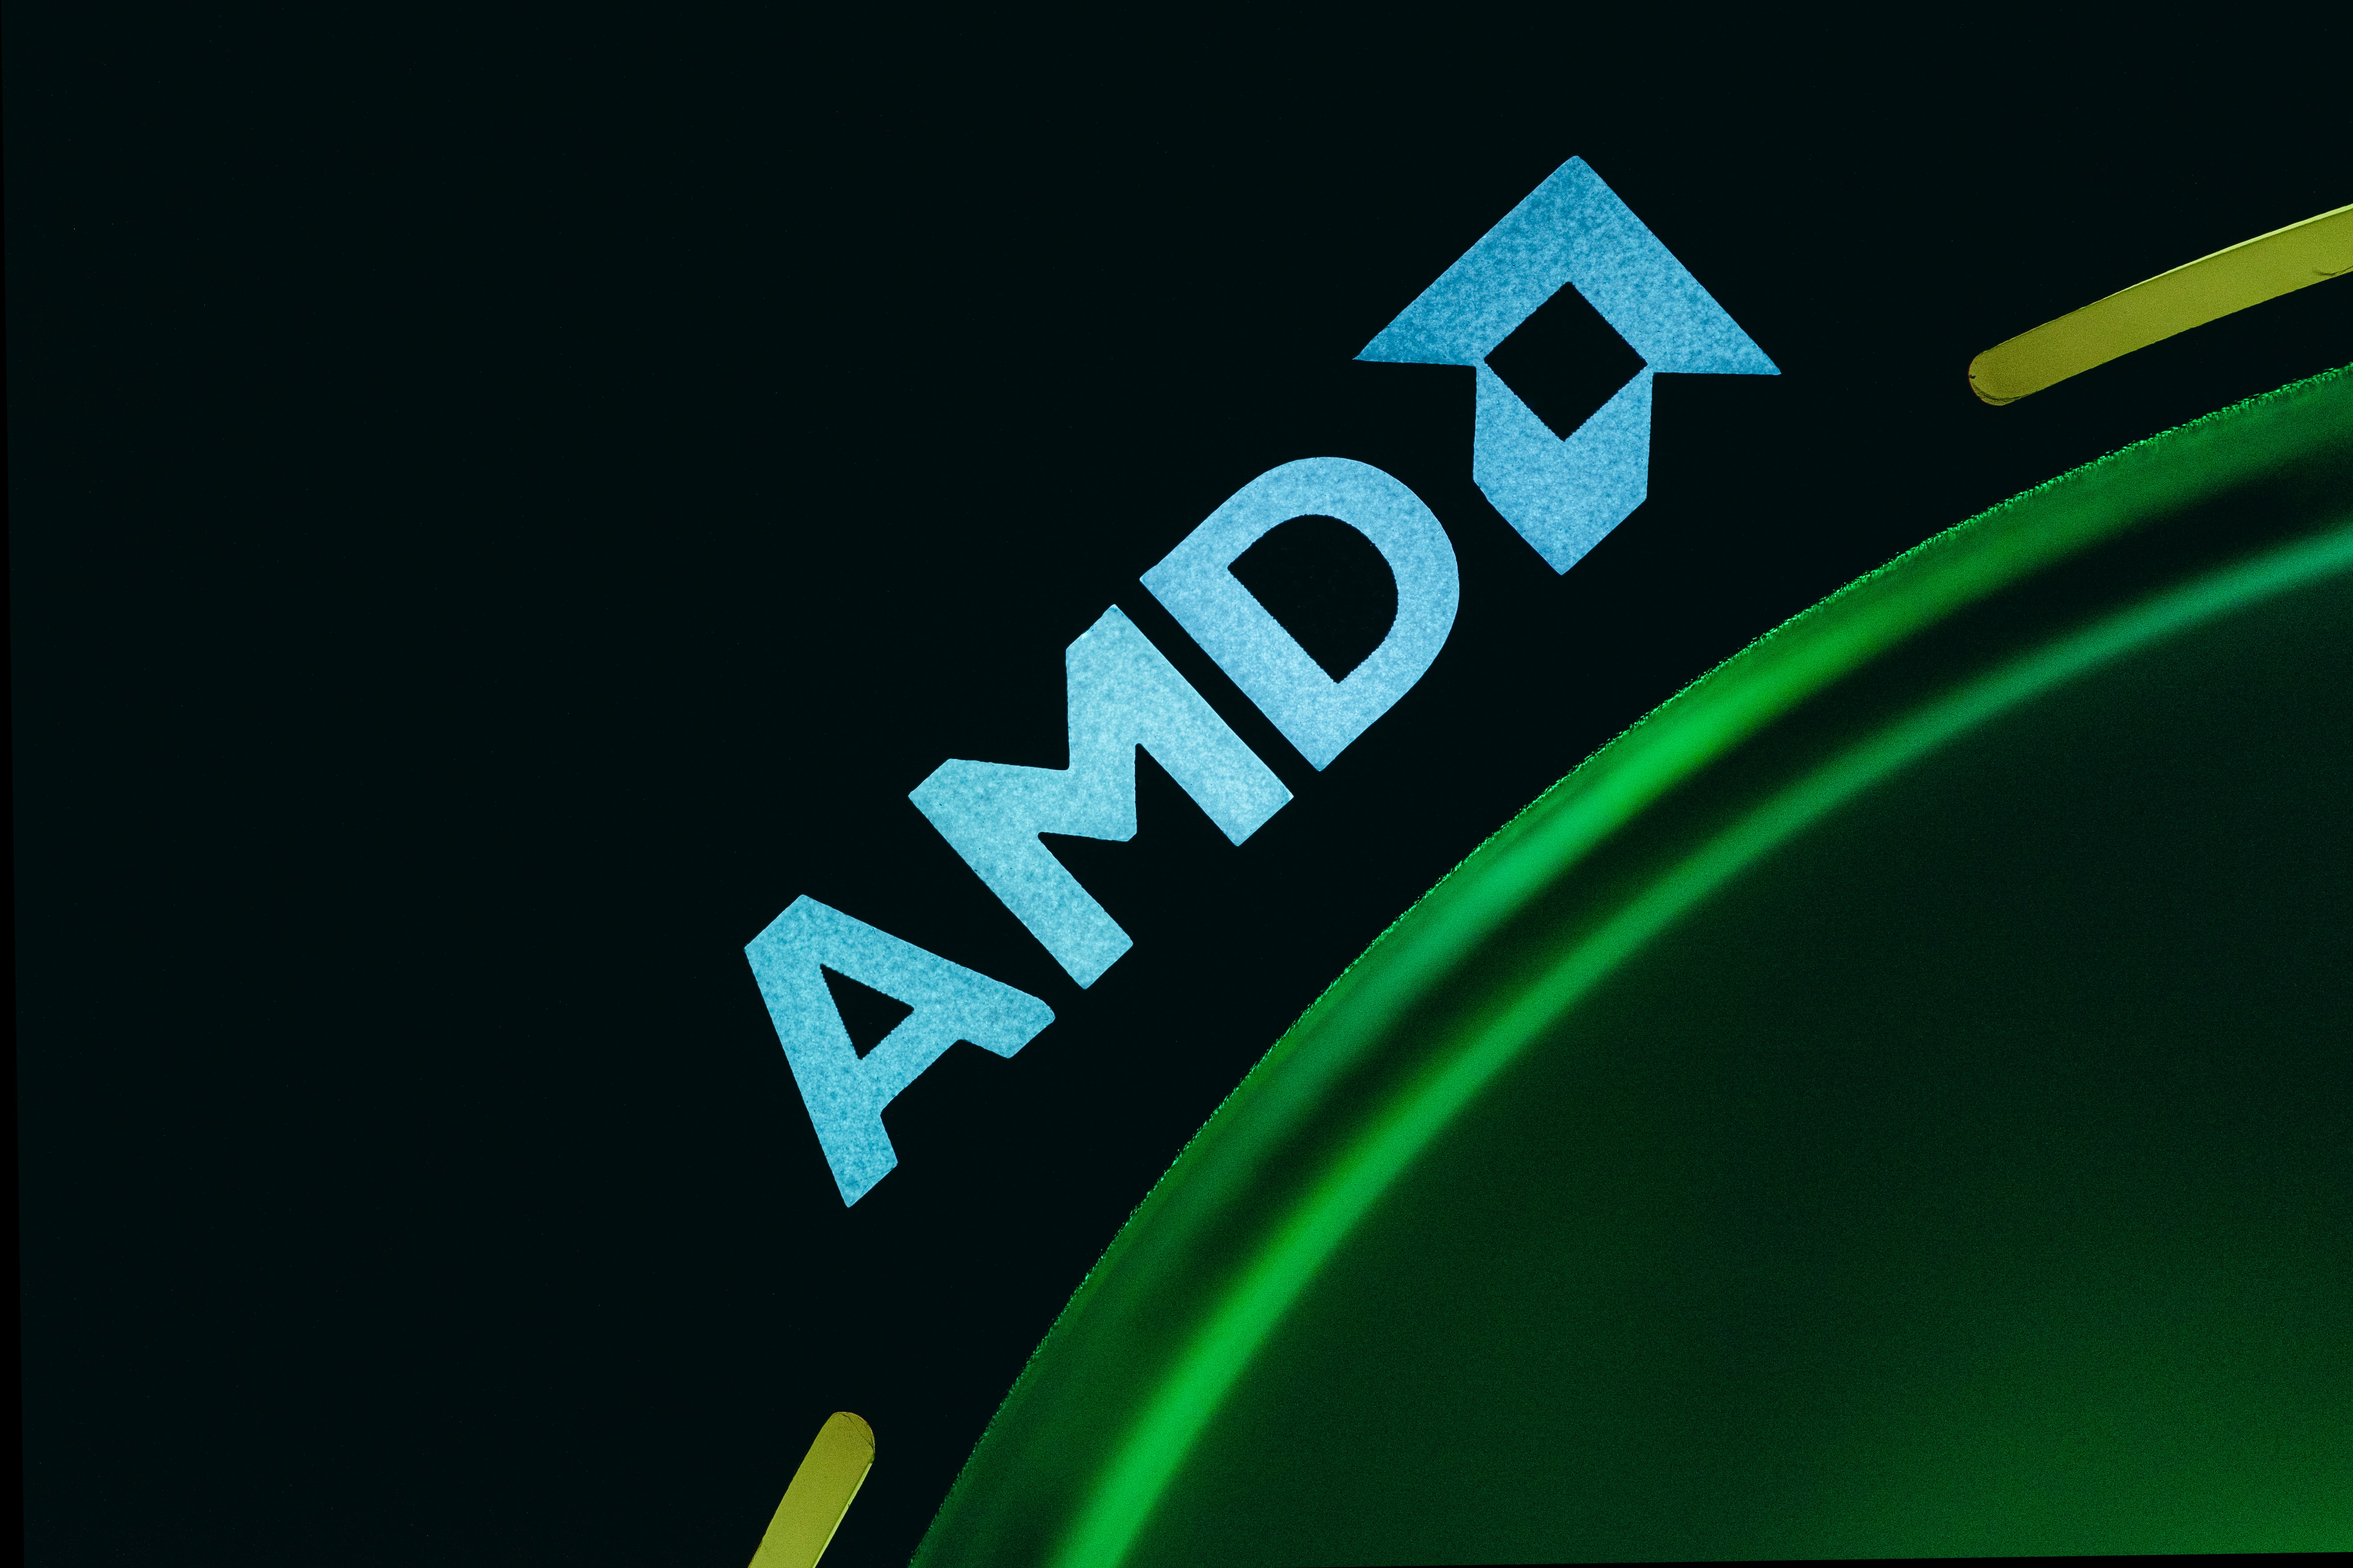 AMD zamyka pewien rozdział. Dziesiątki kart stracą wsparcie